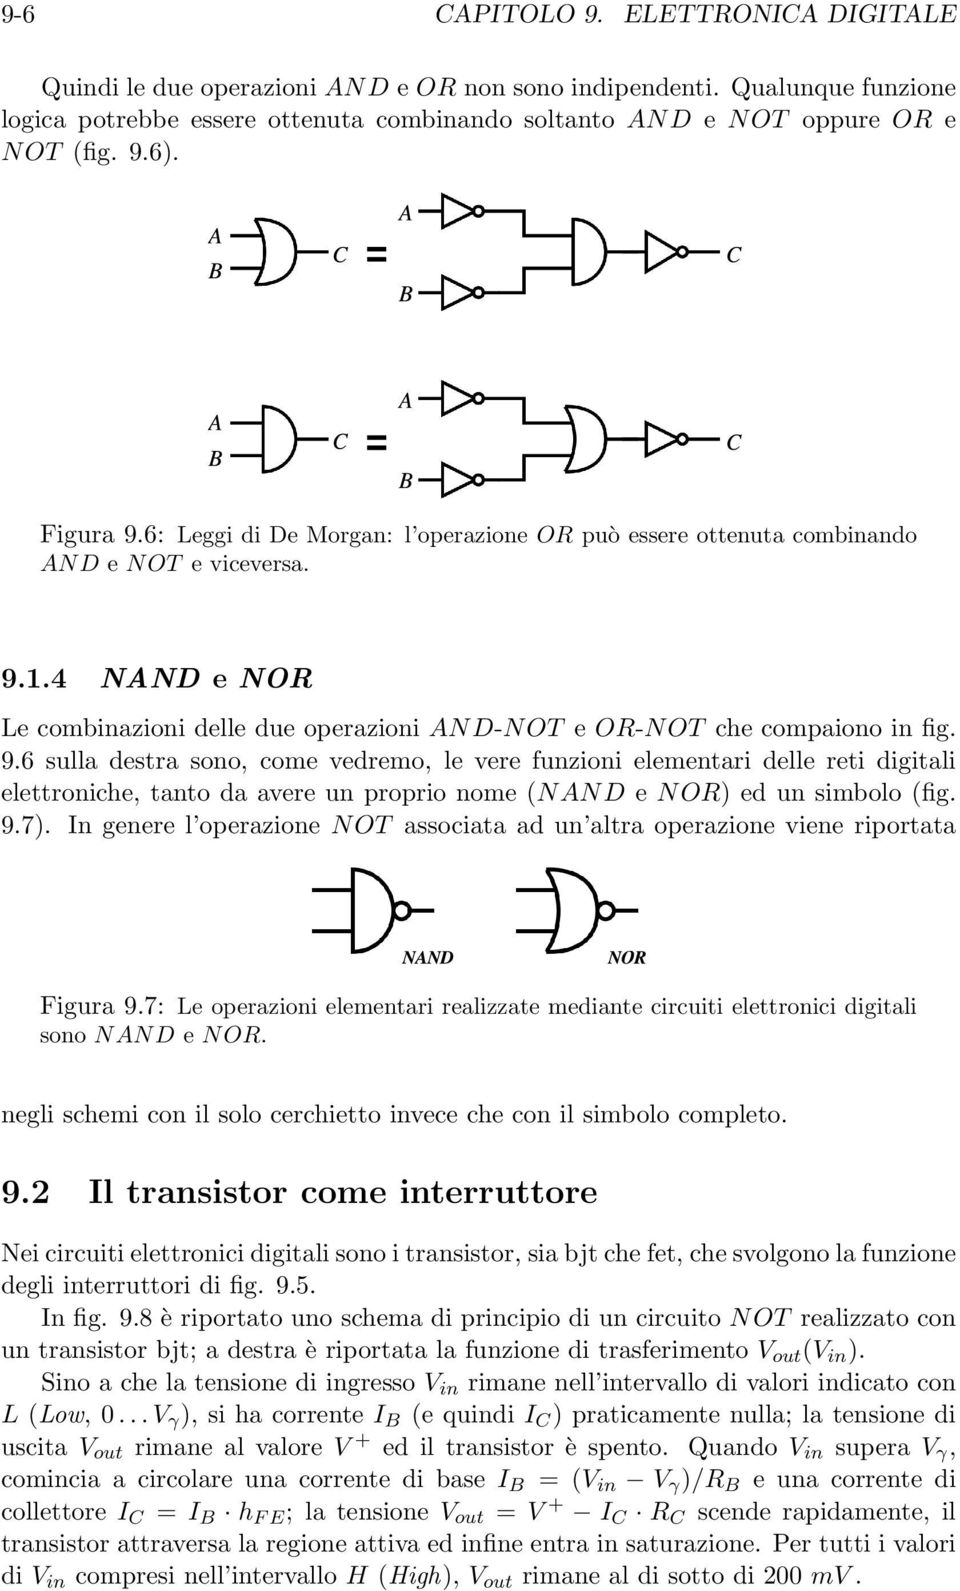 9.6 sulla destra sono, come vedremo, le vere funzioni elementari delle reti digitali elettroniche, tanto da avere un proprio nome (NAND e NOR) ed un simbolo (fig. 9.7).